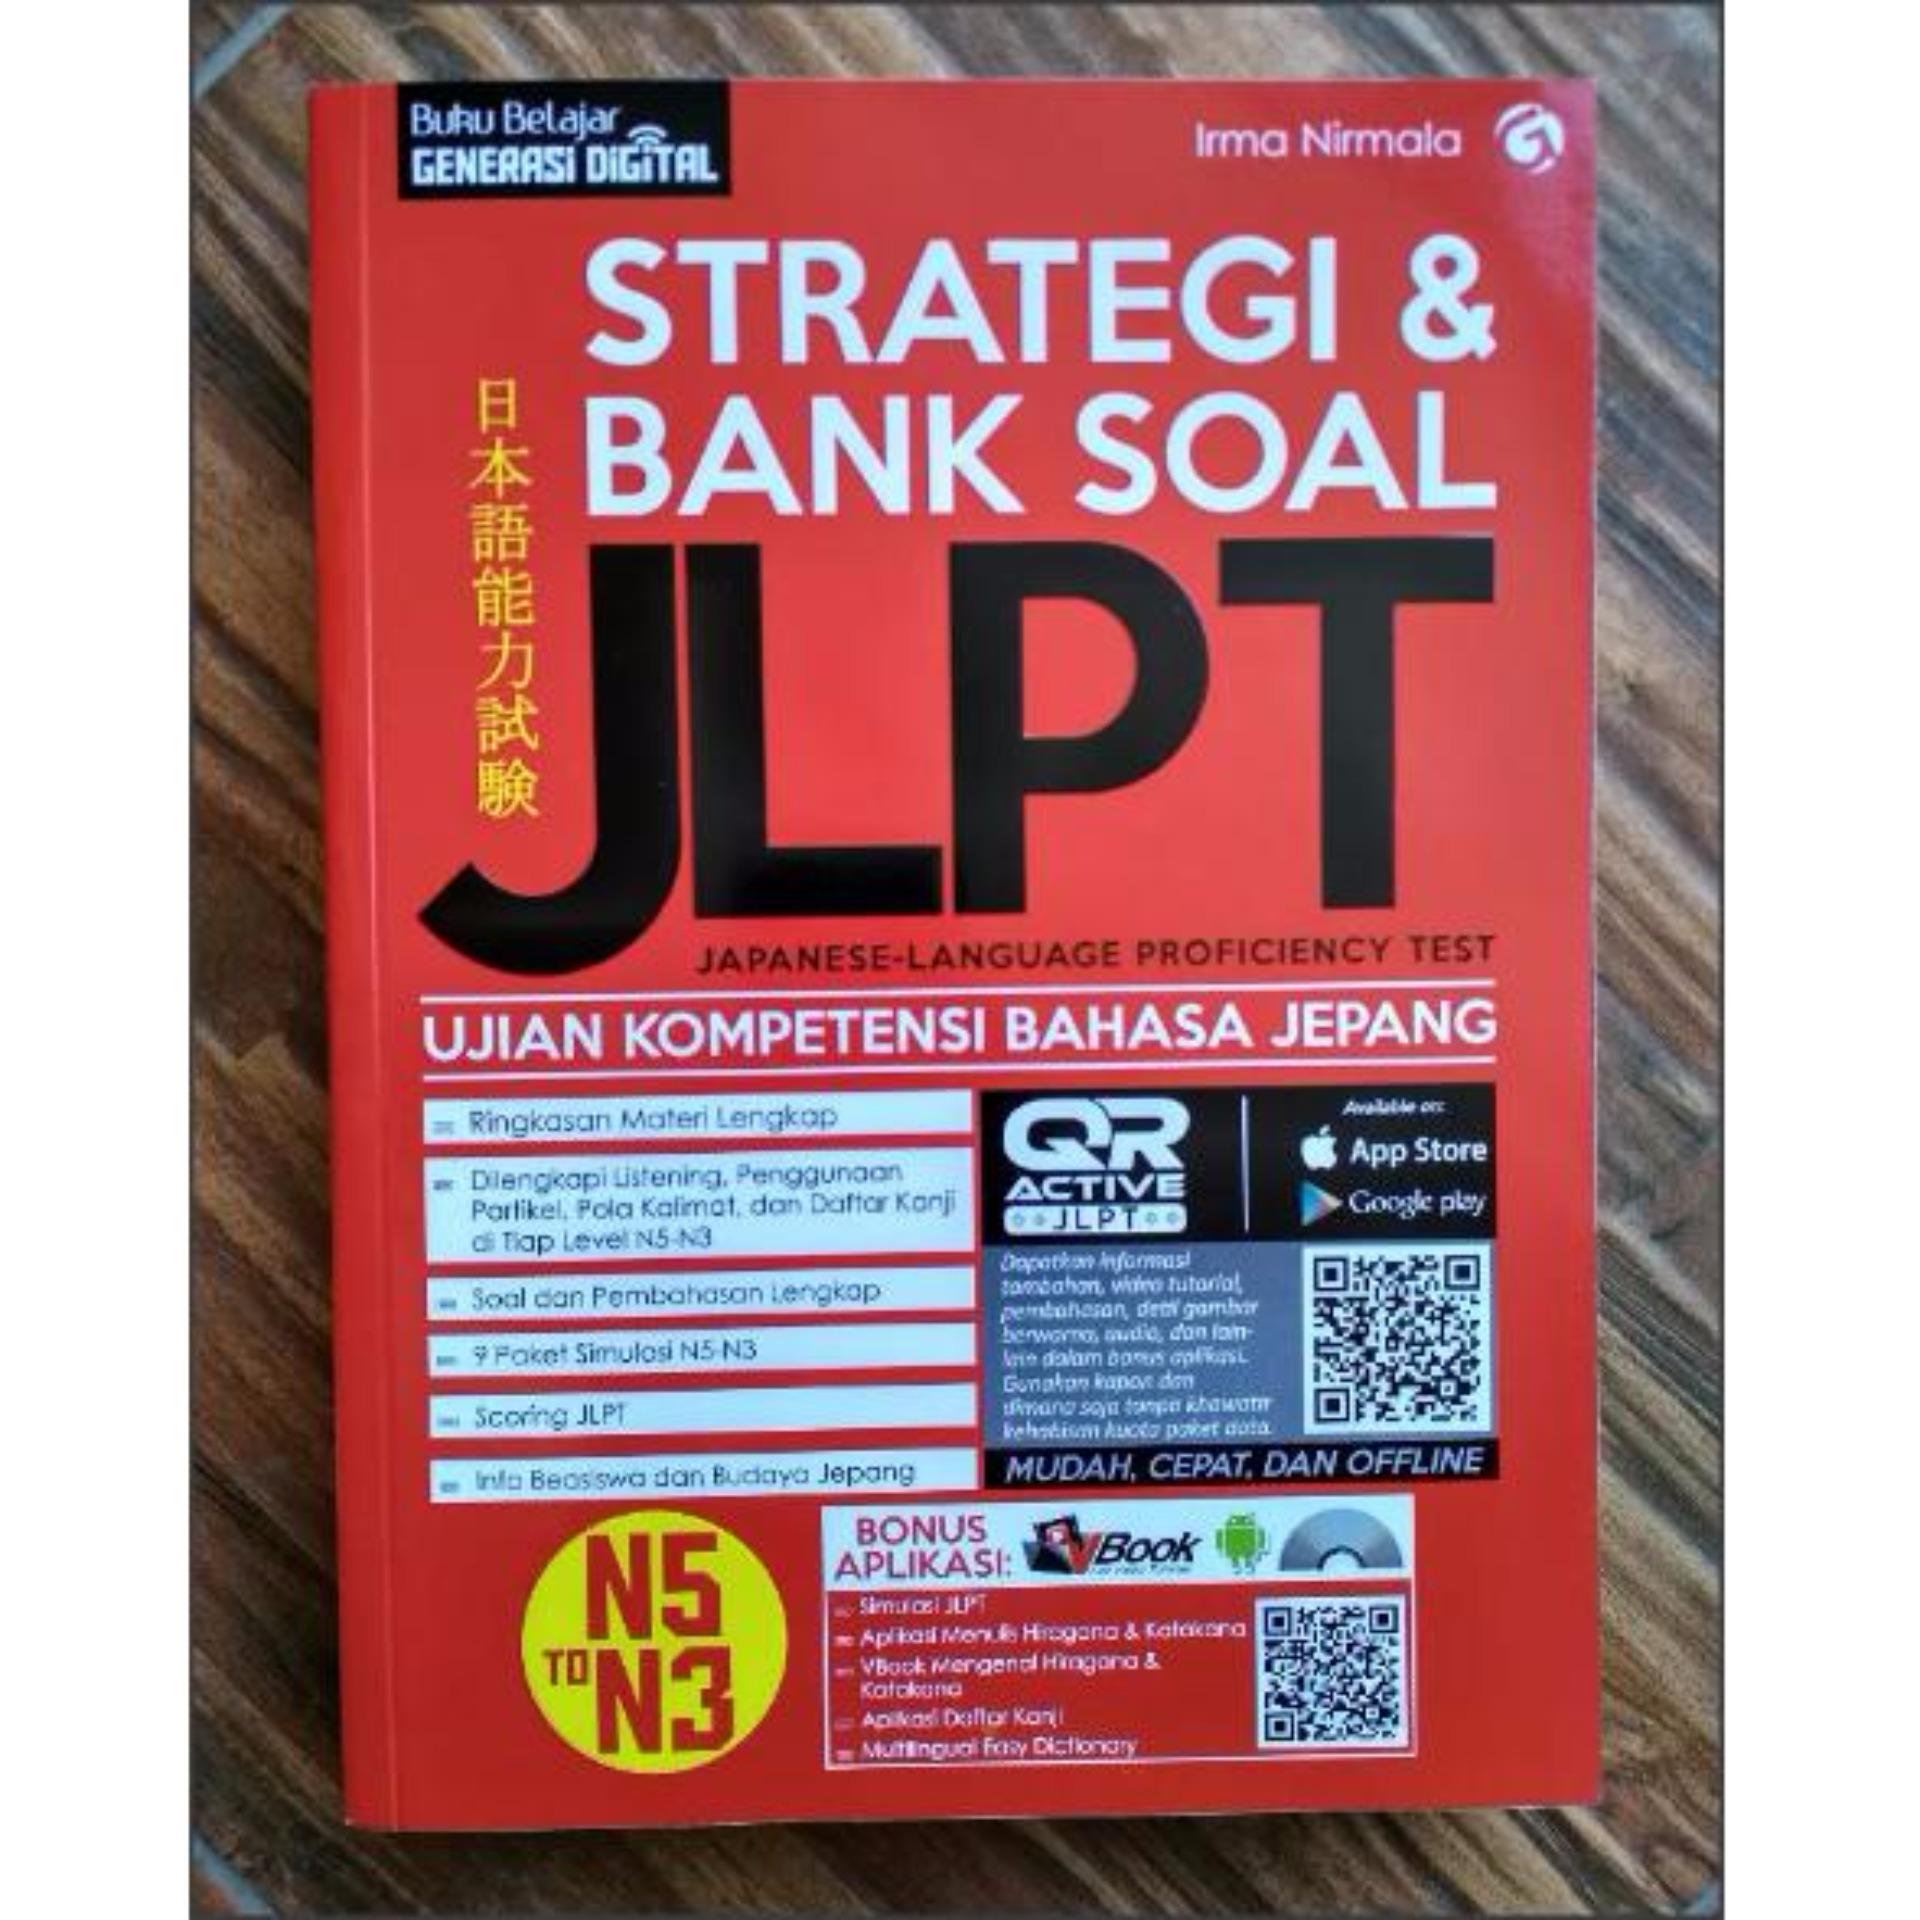 Cheapest Price Strategi & Bank Soal JLPT Buku Persiapan Ujian Bahasa Jepang sale Hanya